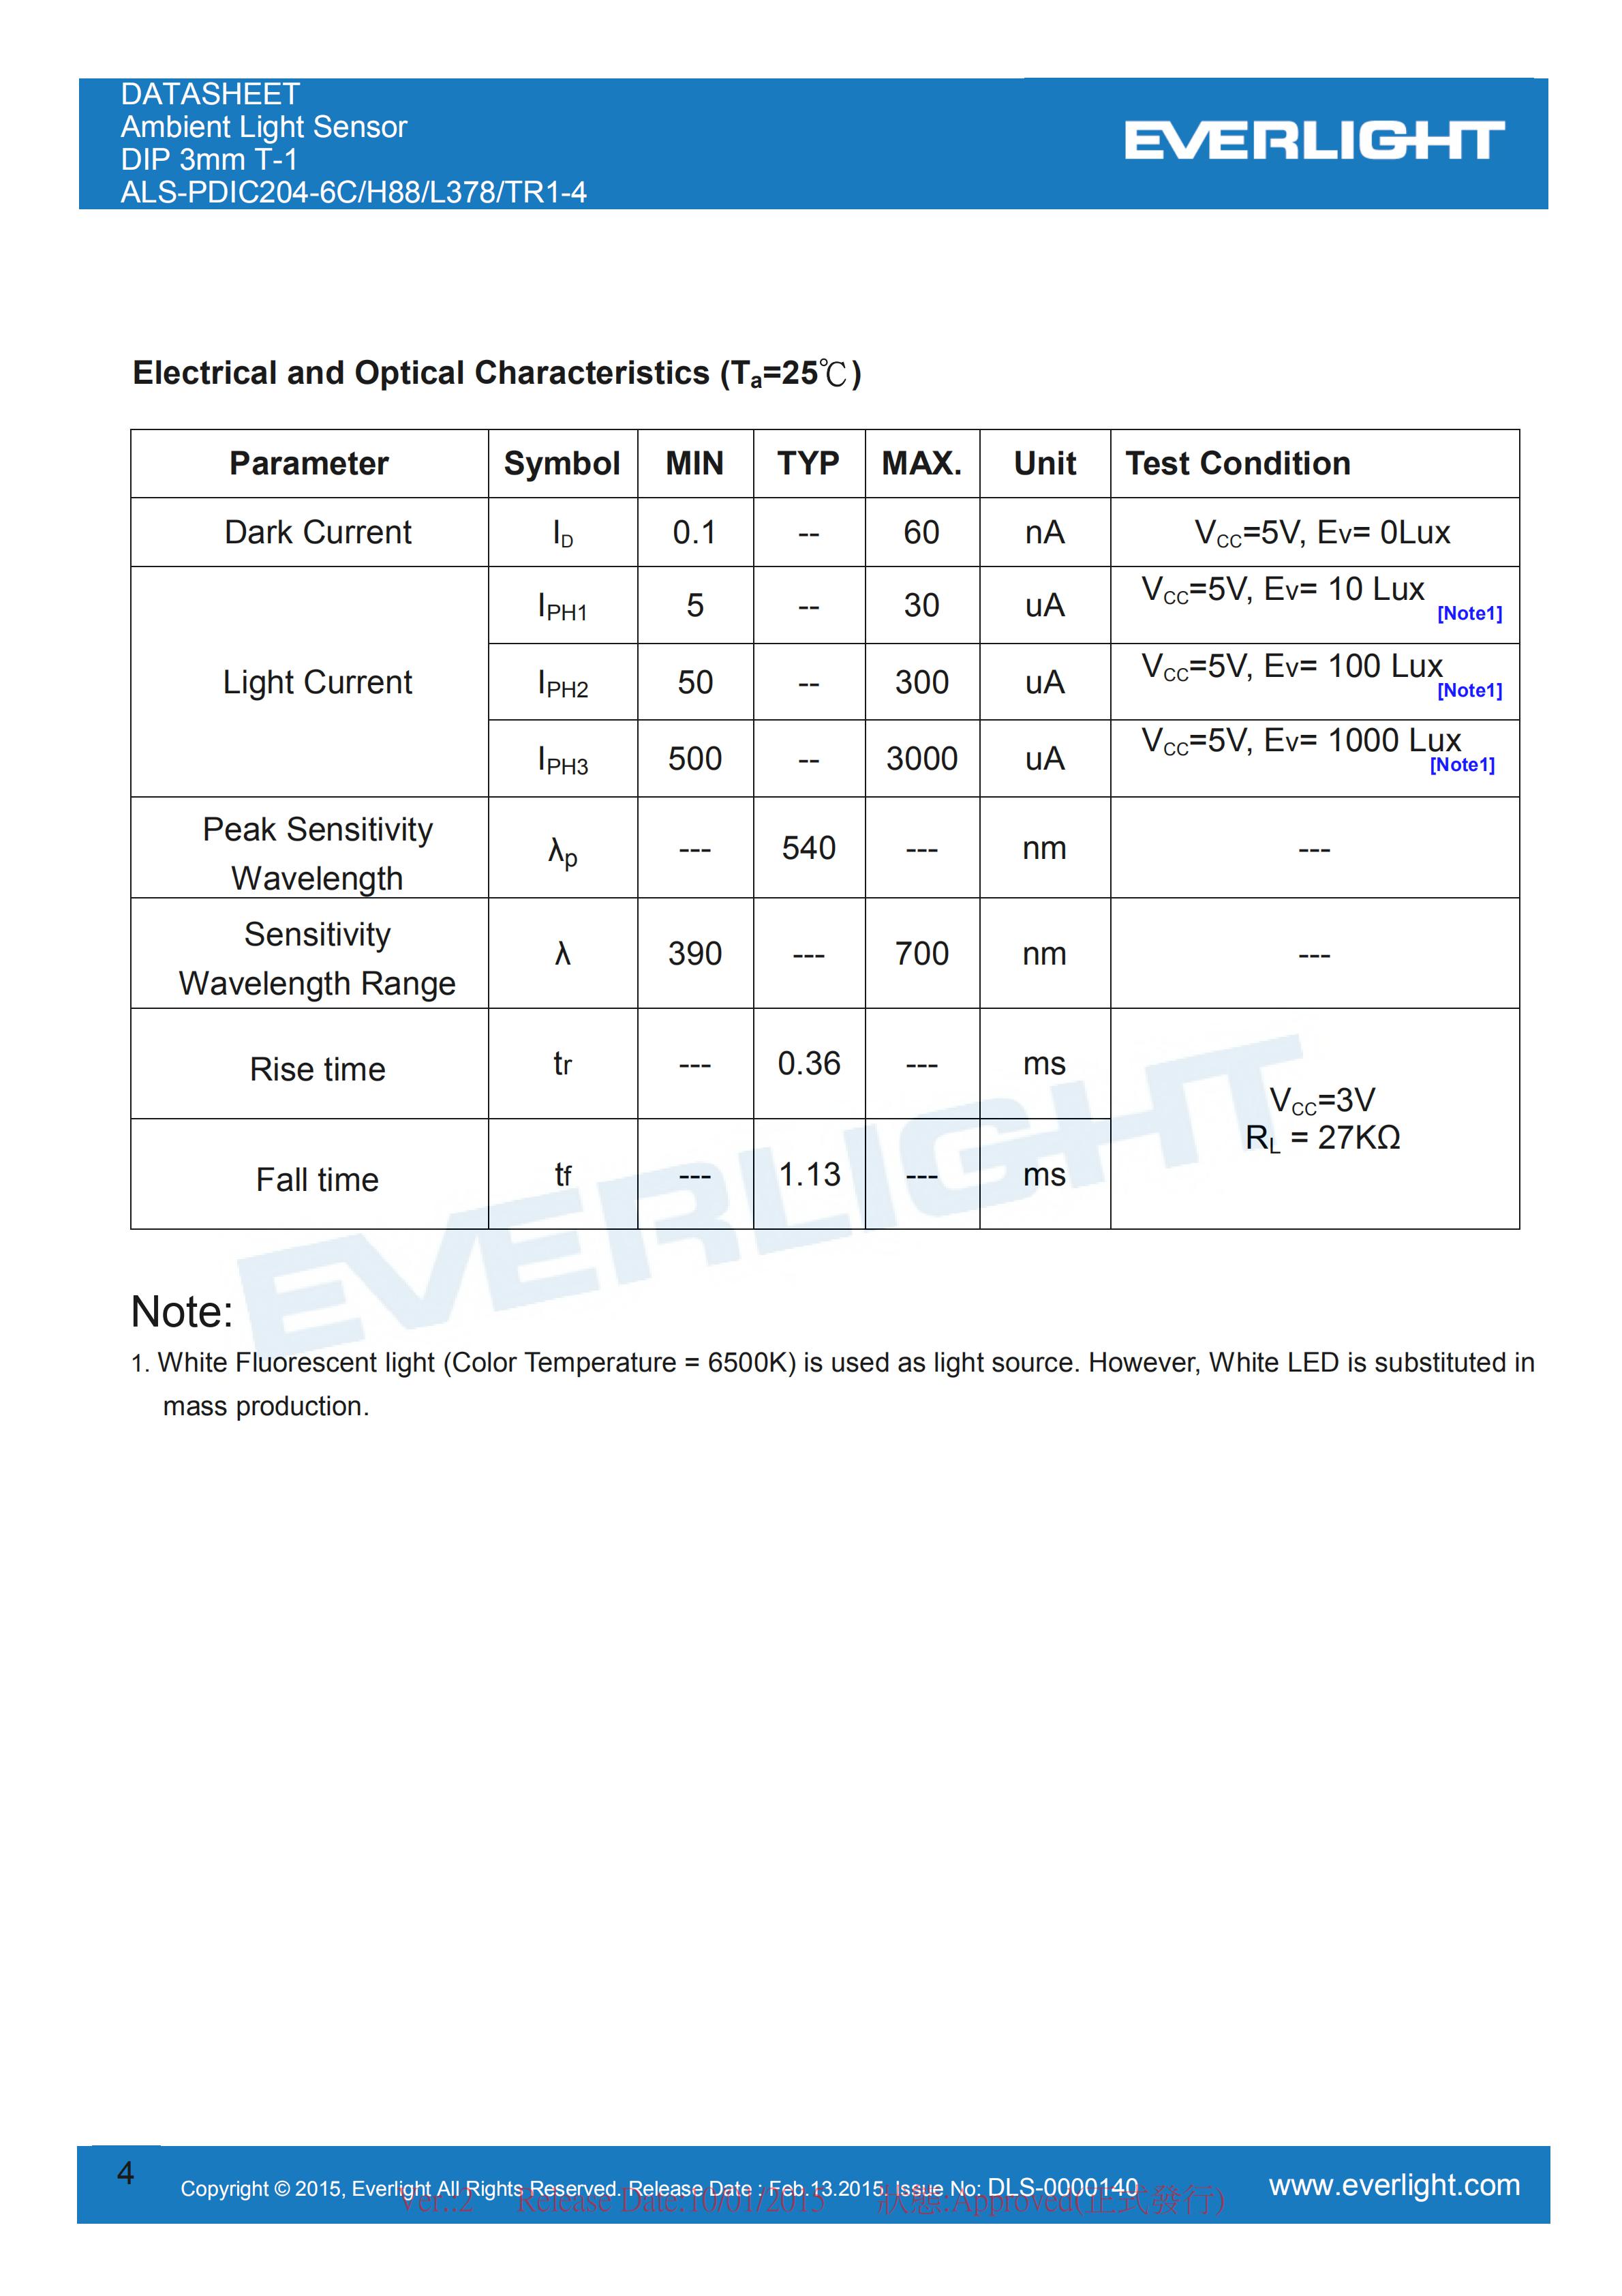 亿光环境光传感器插件ALS-PDIC204-6C/H88/L378/TR1-4规格书（数据表PDF）